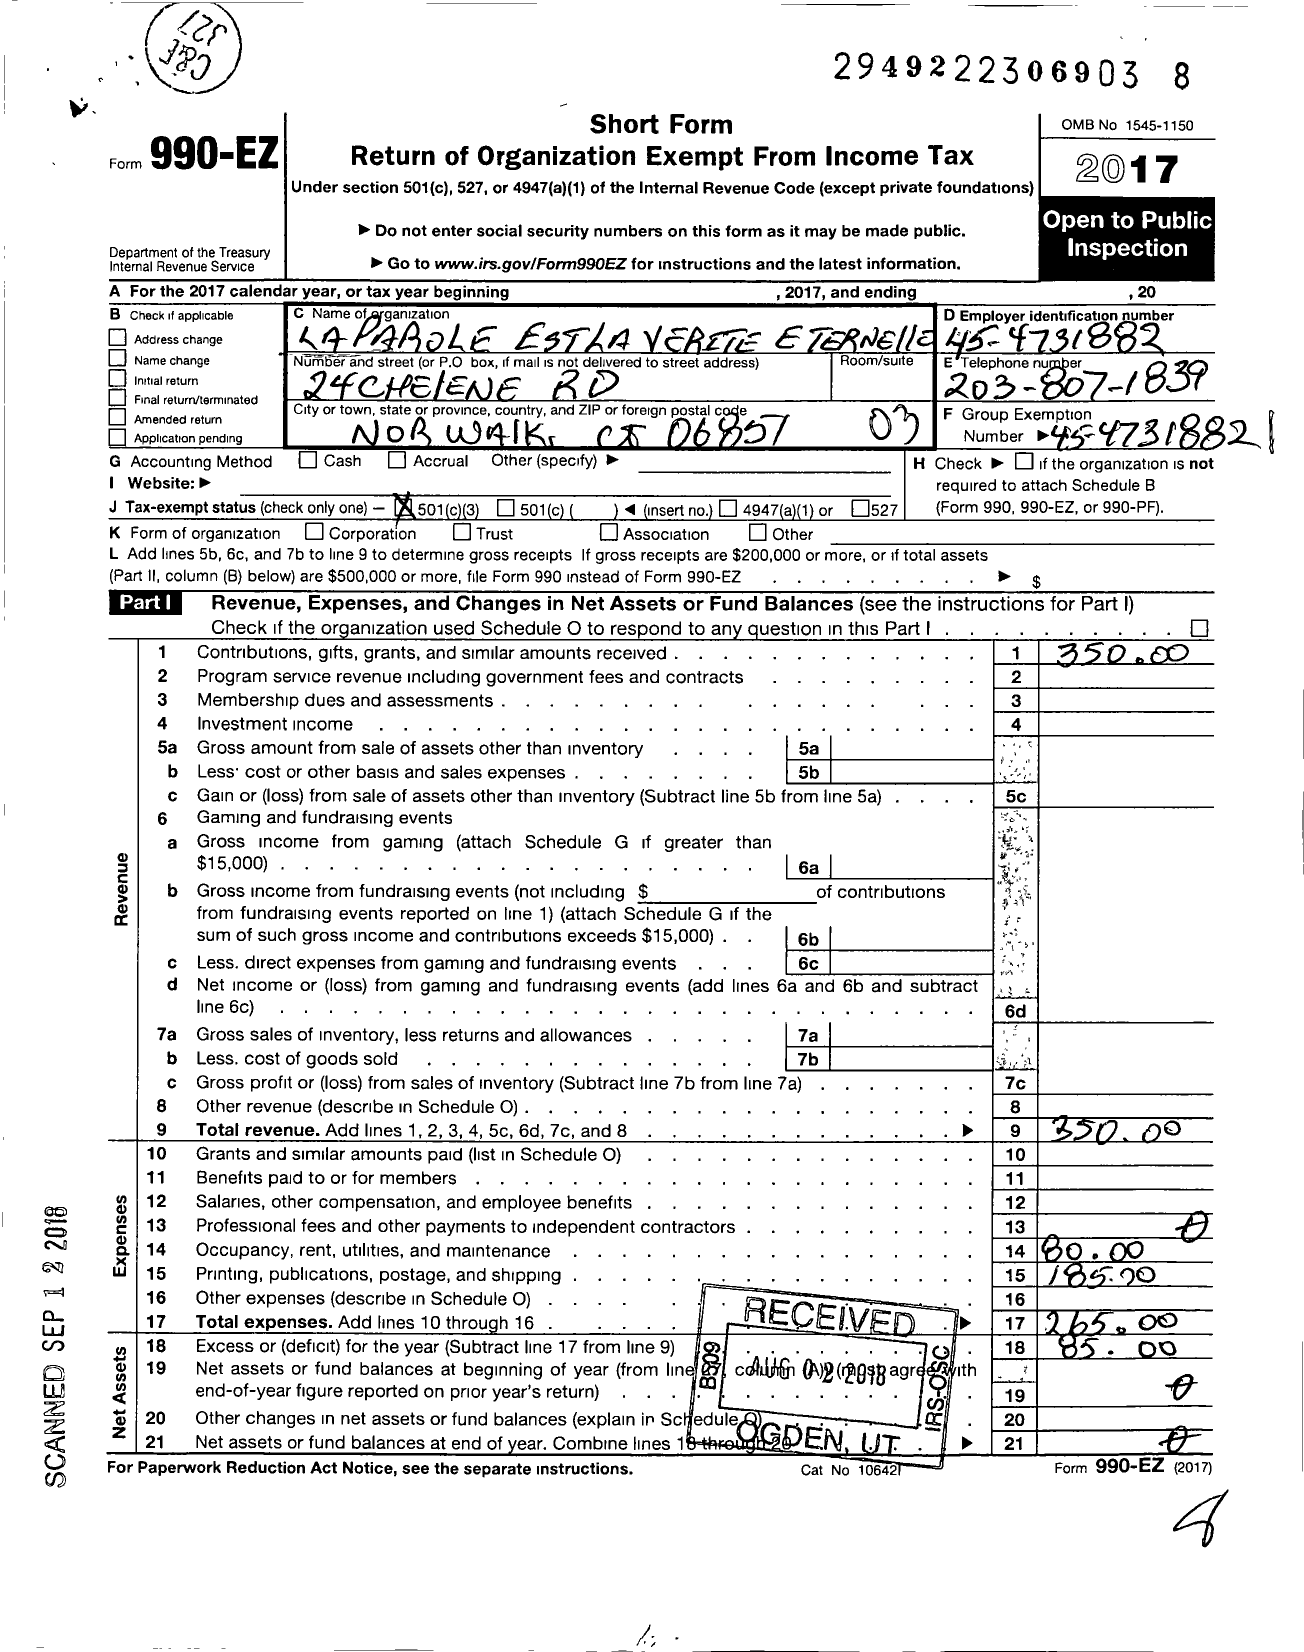 Image of first page of 2017 Form 990EZ for La Parole Et La Verite Eternelle